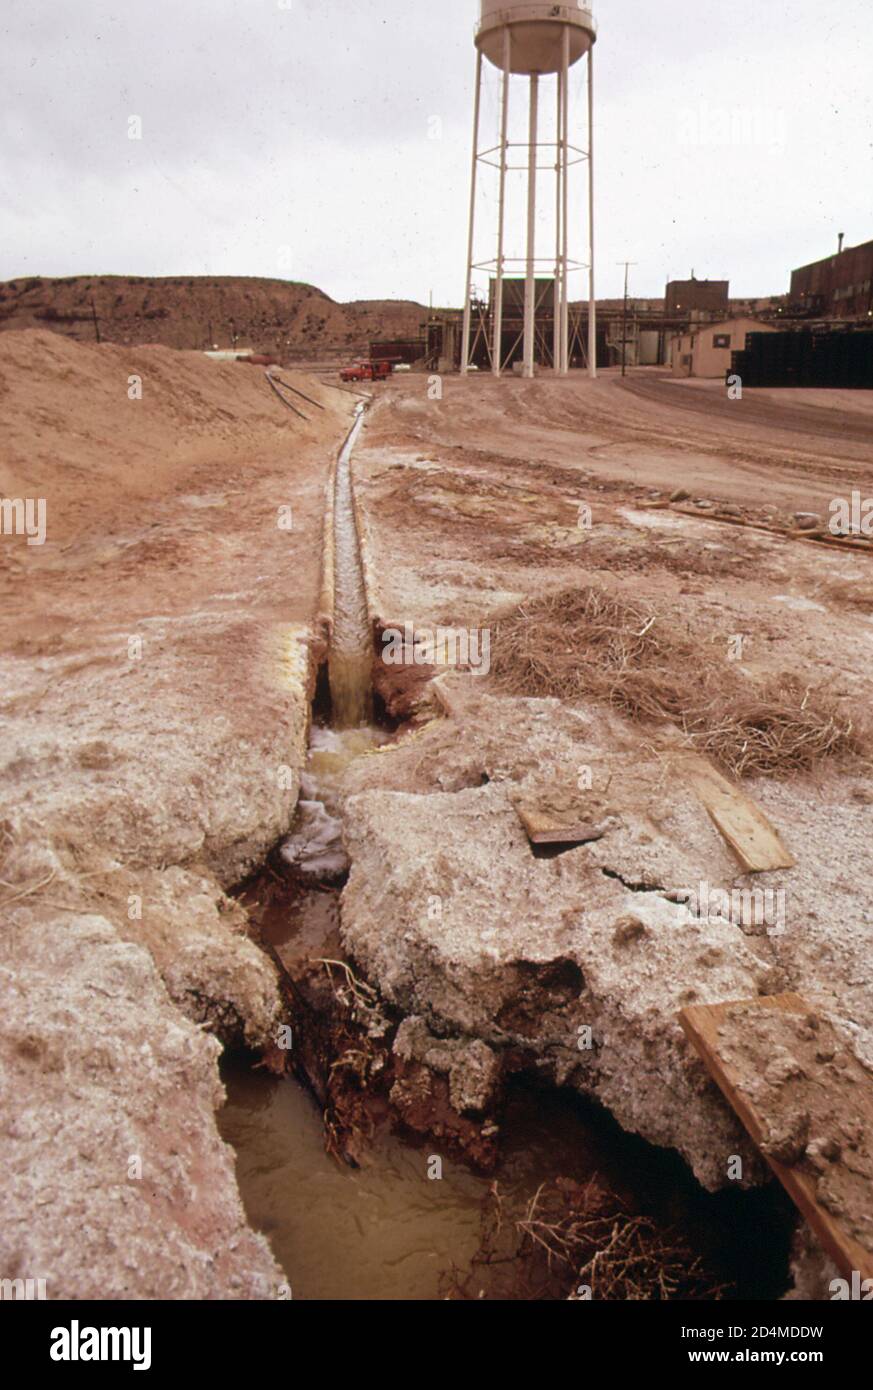 Abwasser aus dem Uranmahlprozess wird in den Absetzteich der Union Carbide-Anlage geleitet - Ort: In oder in der Nähe von Rifle; Colorado Ca. 1972 Stockfoto